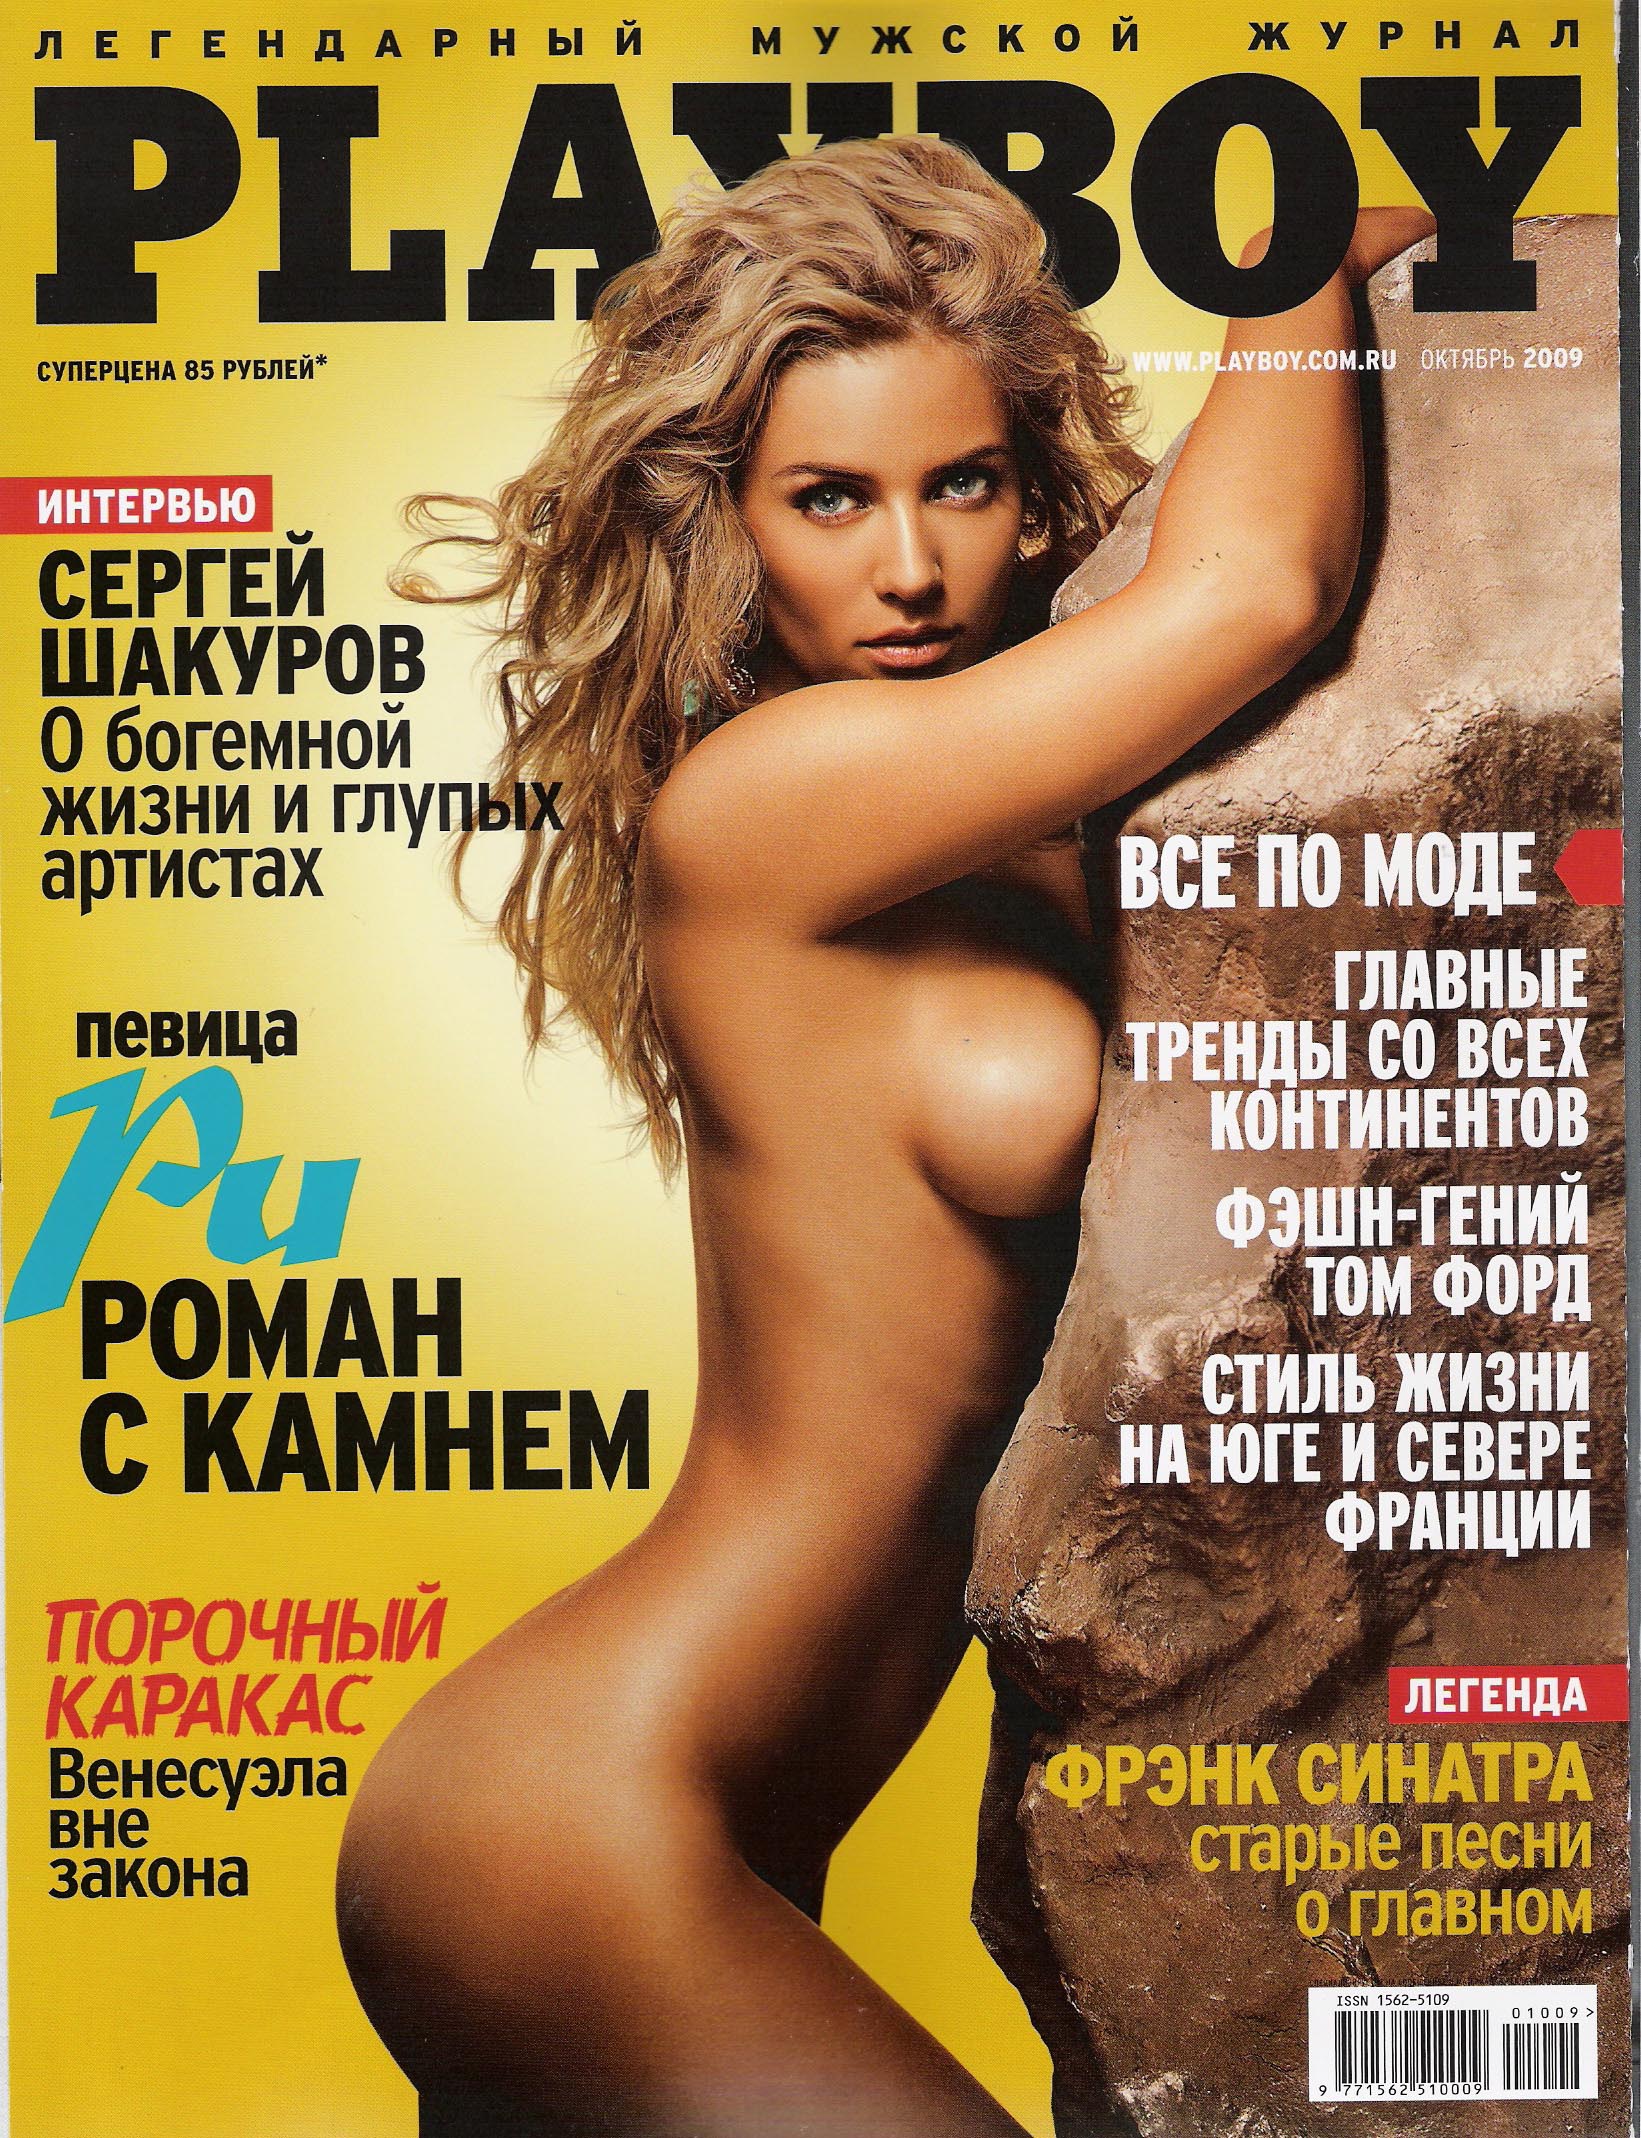 Playboy - легендарный мужской журнал. 